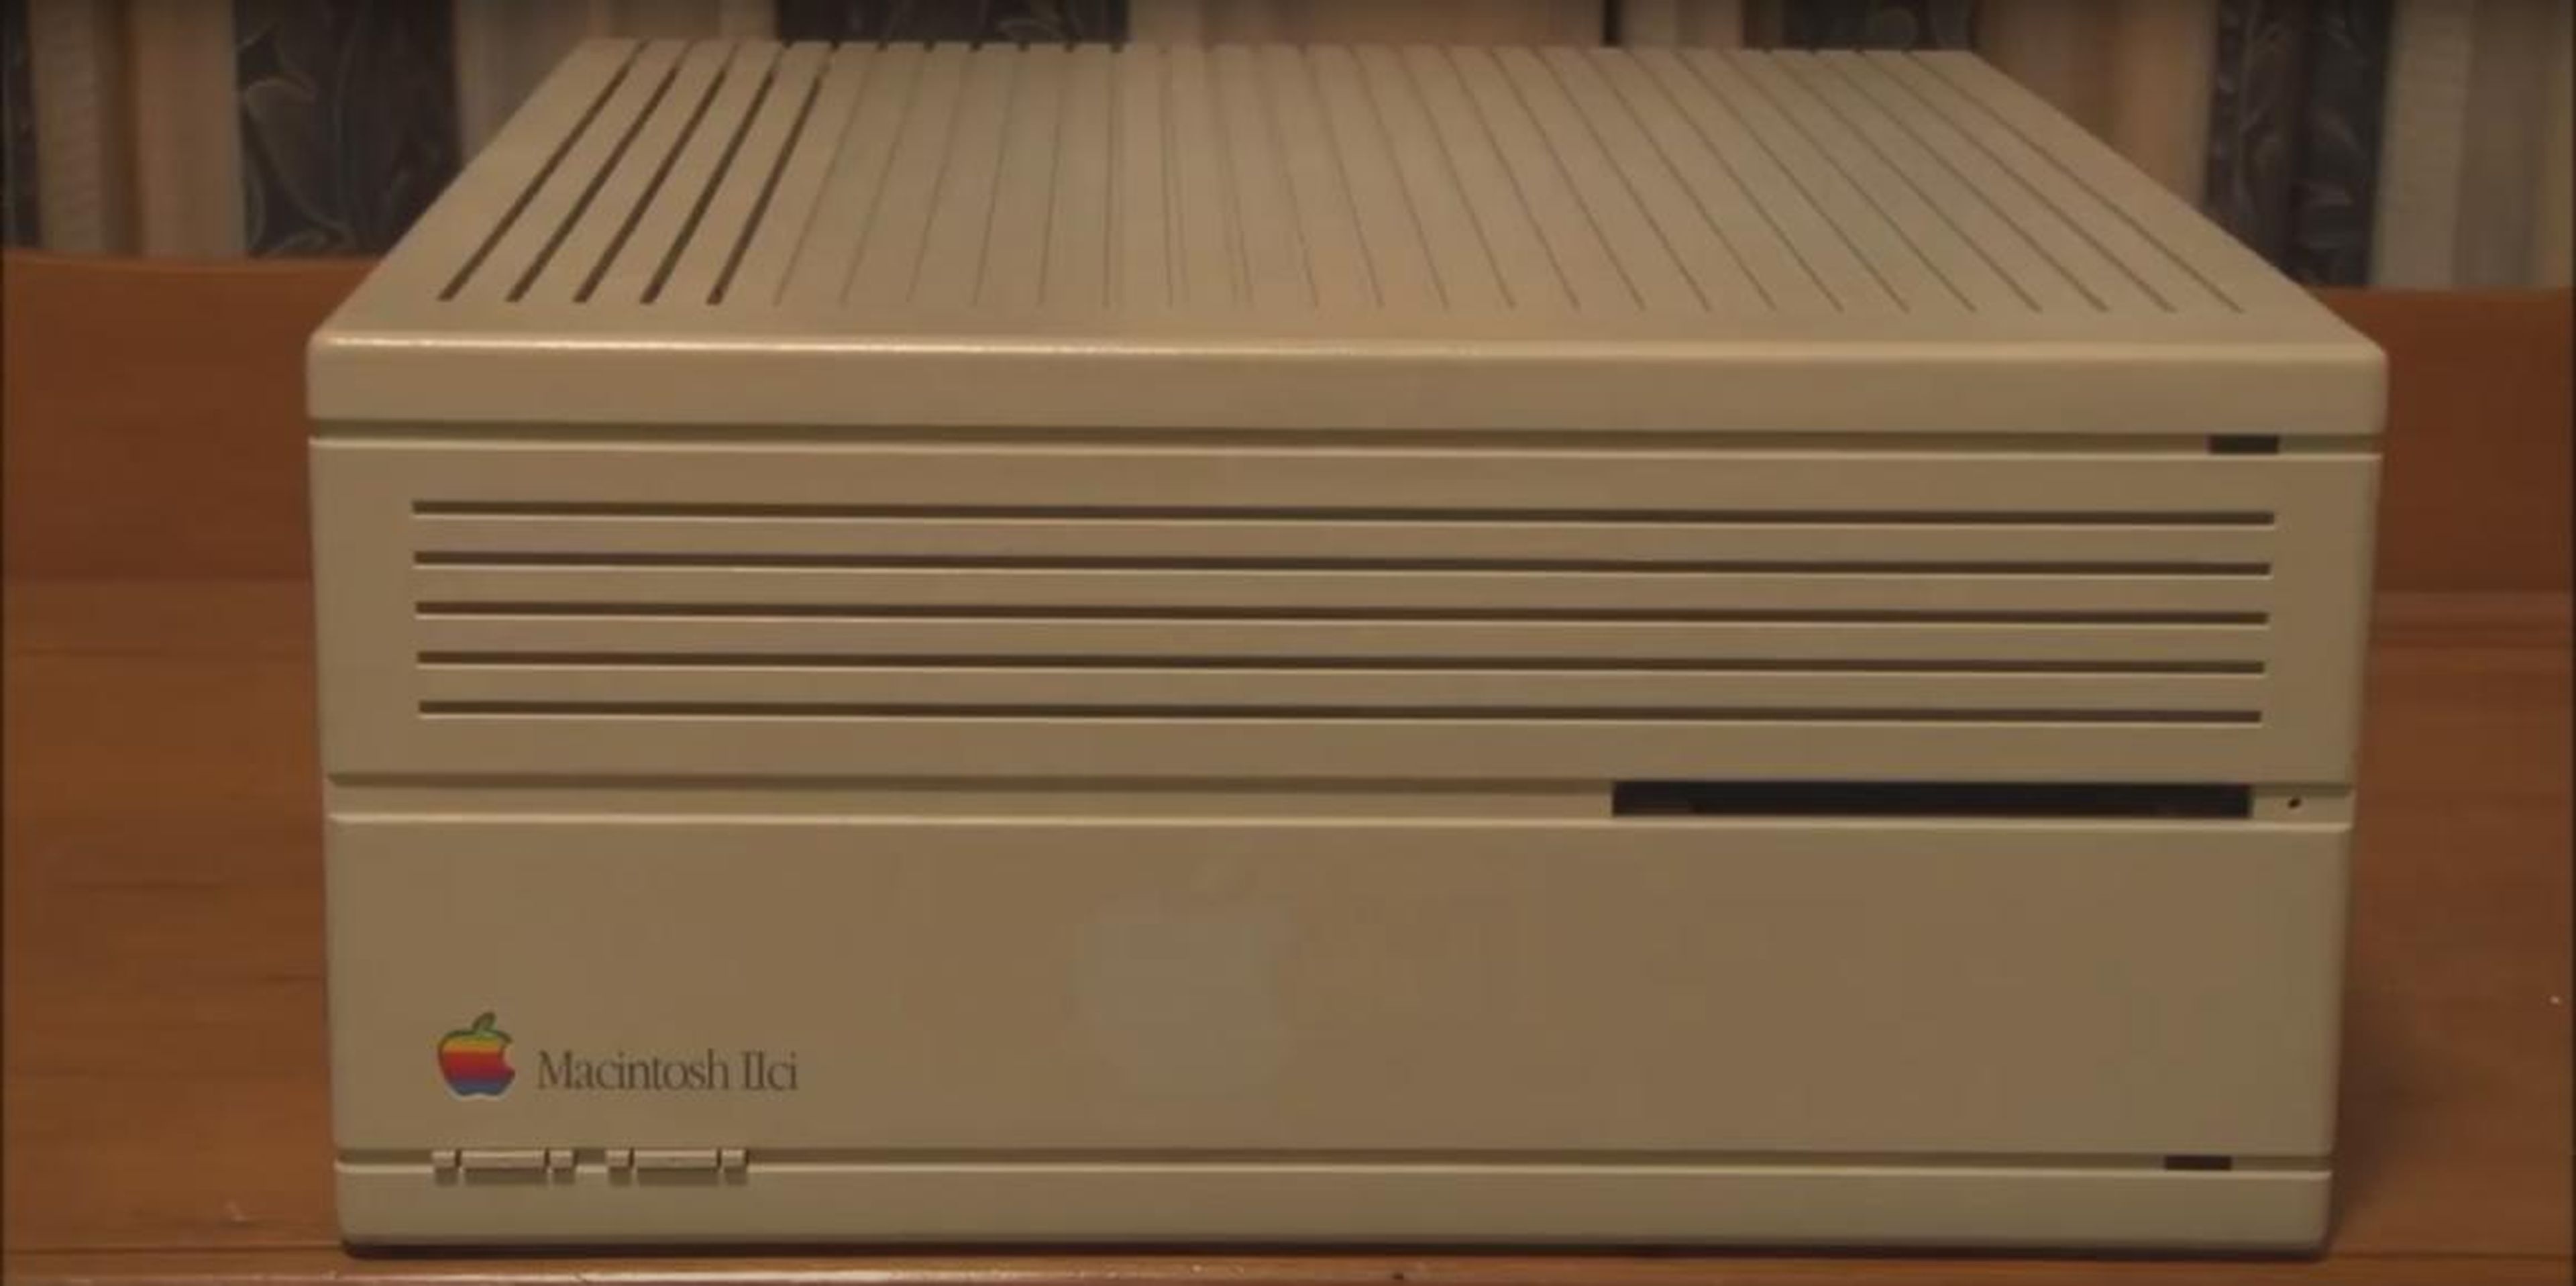 8. Macintosh IIci (1989) — $8,800